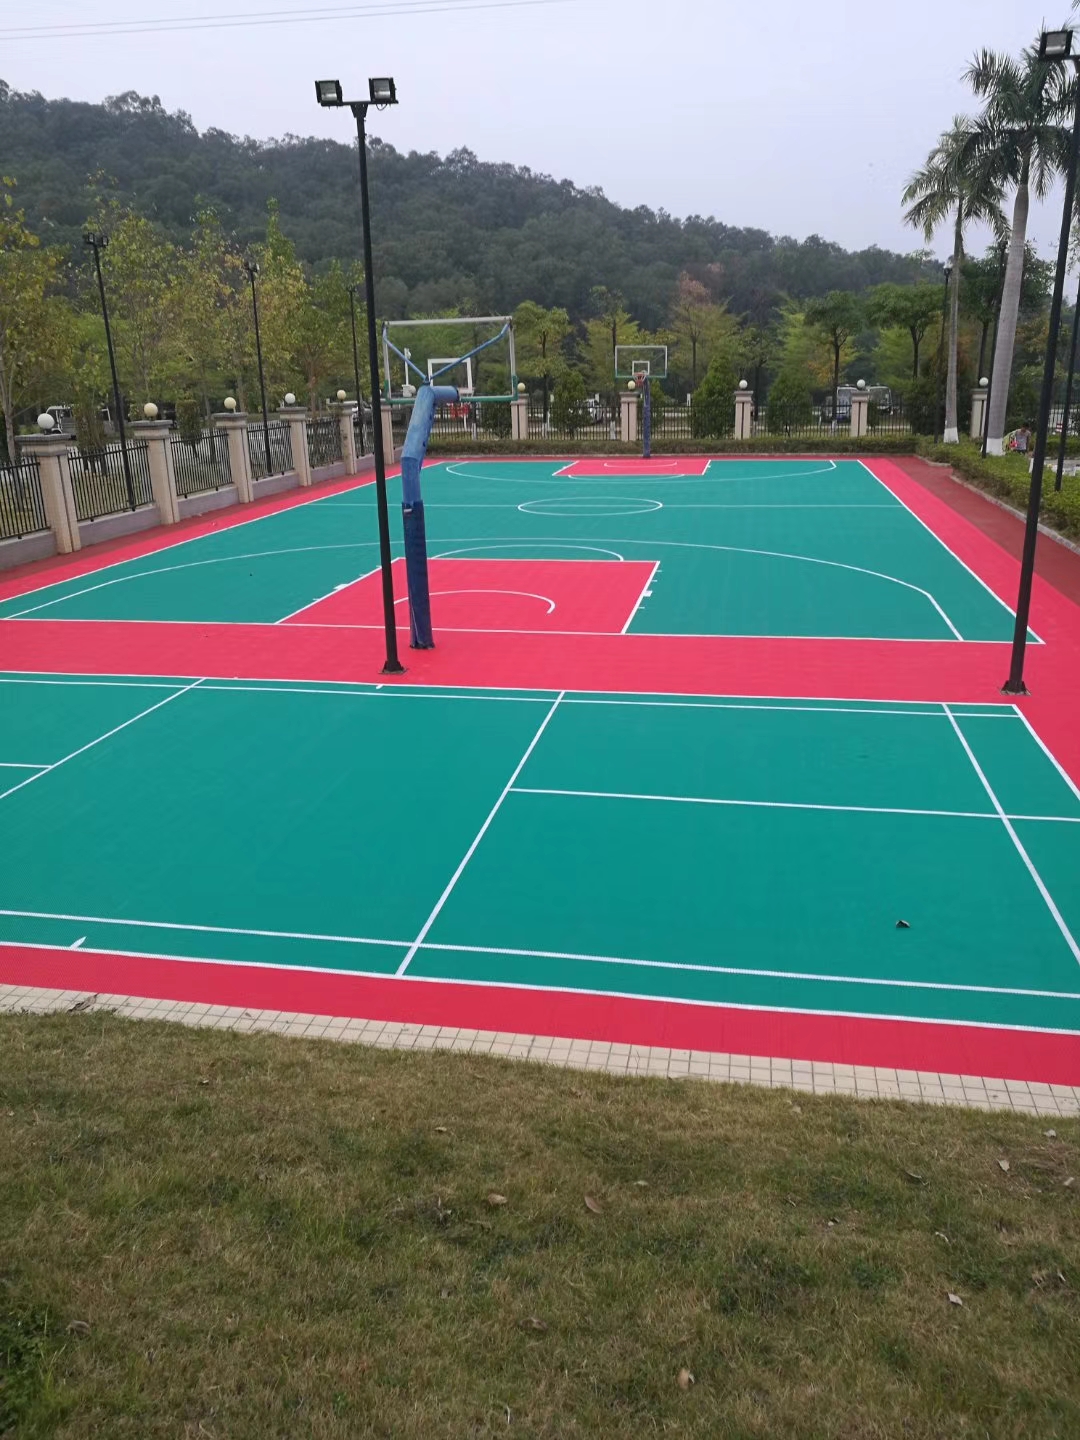  羽毛球运动馆应该选用什么品牌的PVC地板